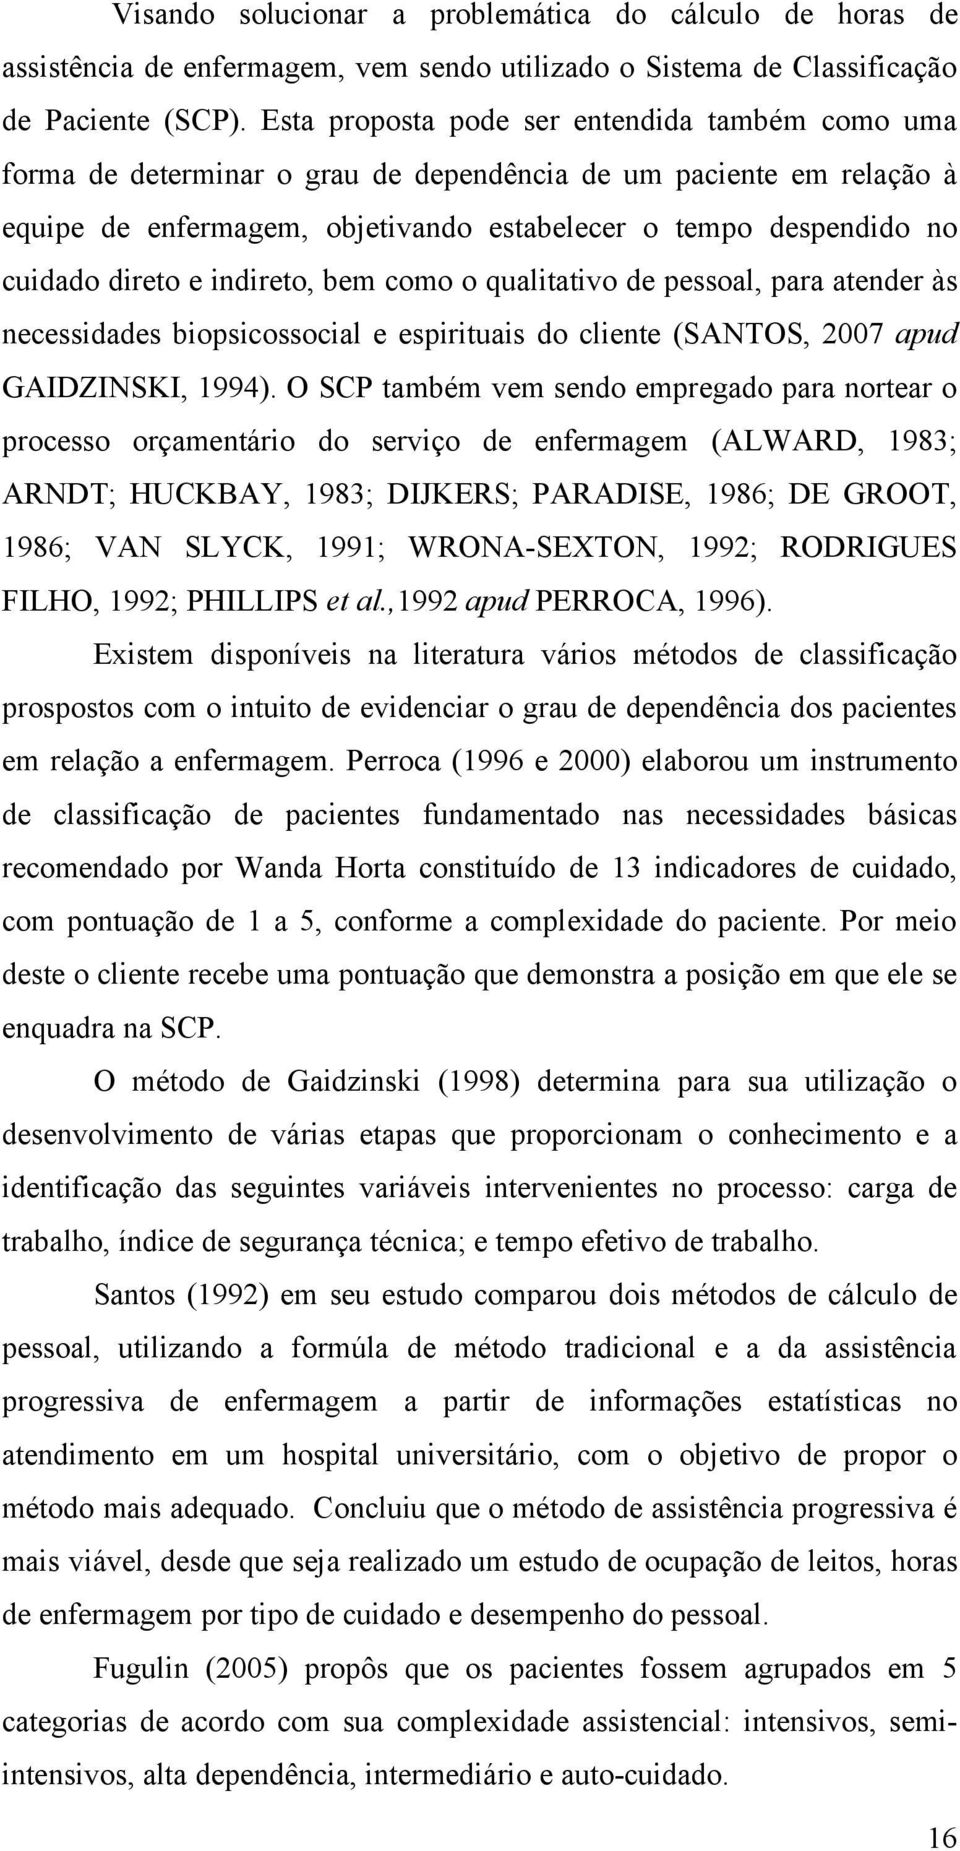 direto e indireto, bem como o qualitativo de pessoal, para atender às necessidades biopsicossocial e espirituais do cliente (SANTOS, 2007 apud GAIDZINSKI, 1994).